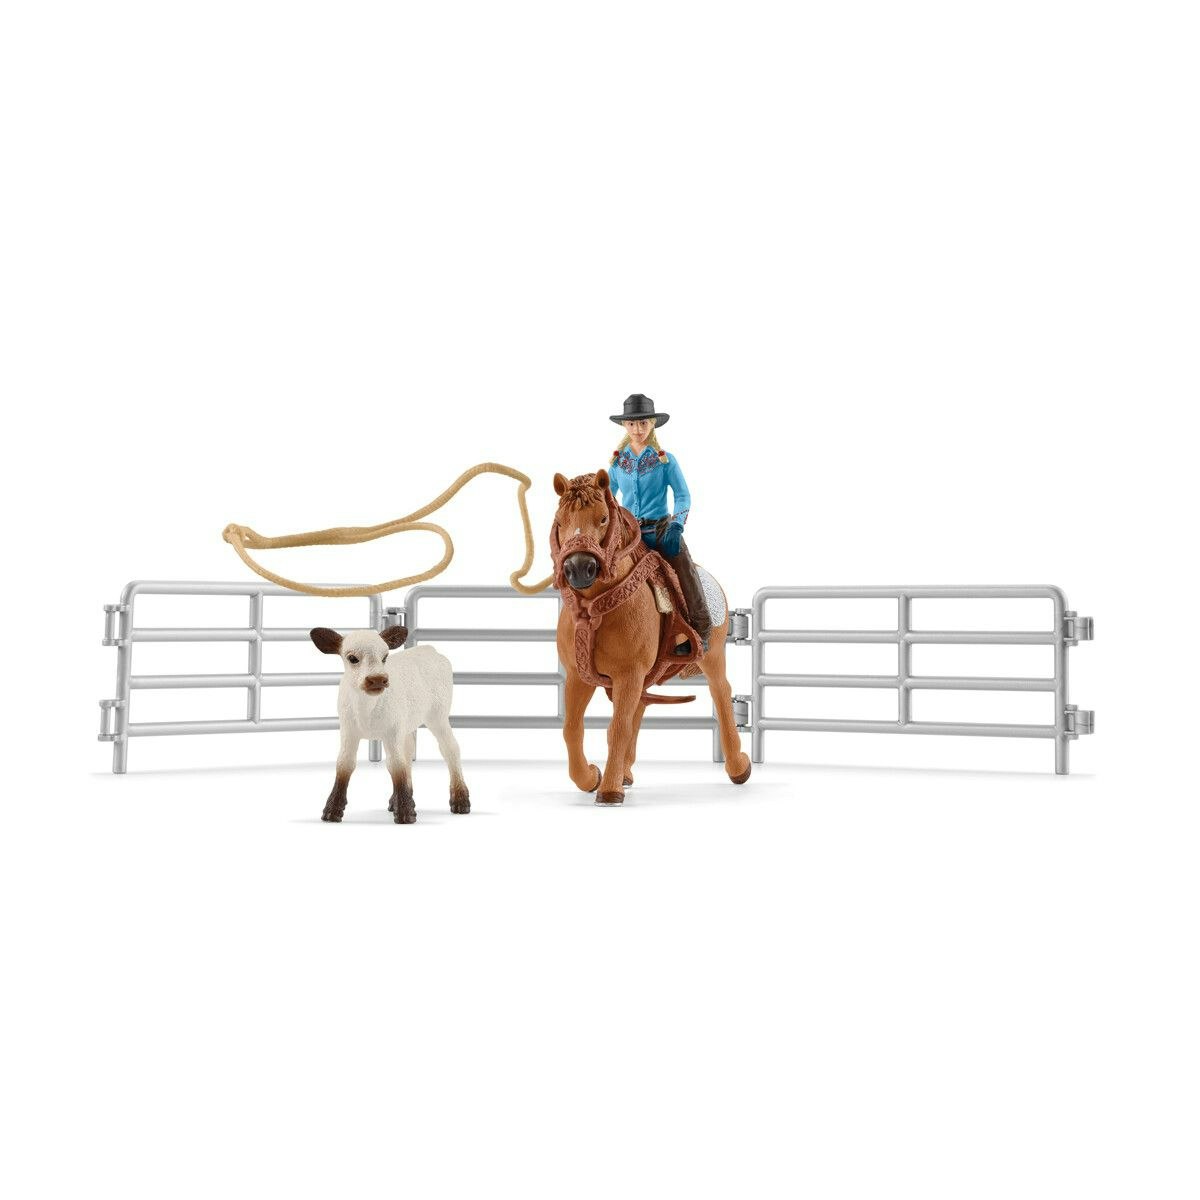 Schleich Farm World Cowgirl Team Roping Fun / westernryttare